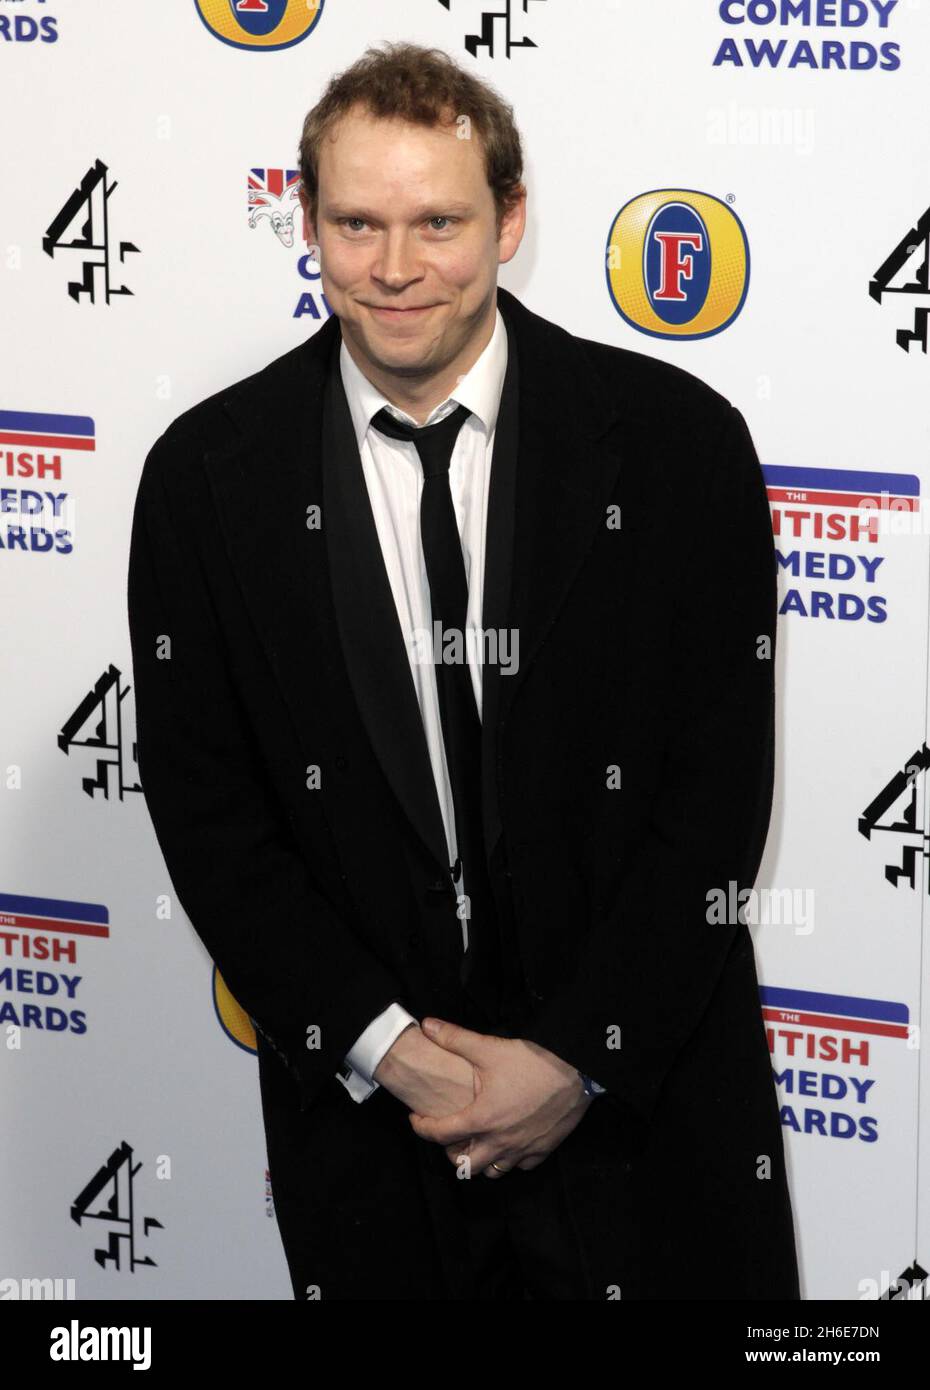 Robert Webb photographié aux British Comedy Awards 2010 à l'O2 Arena de Londres. Banque D'Images